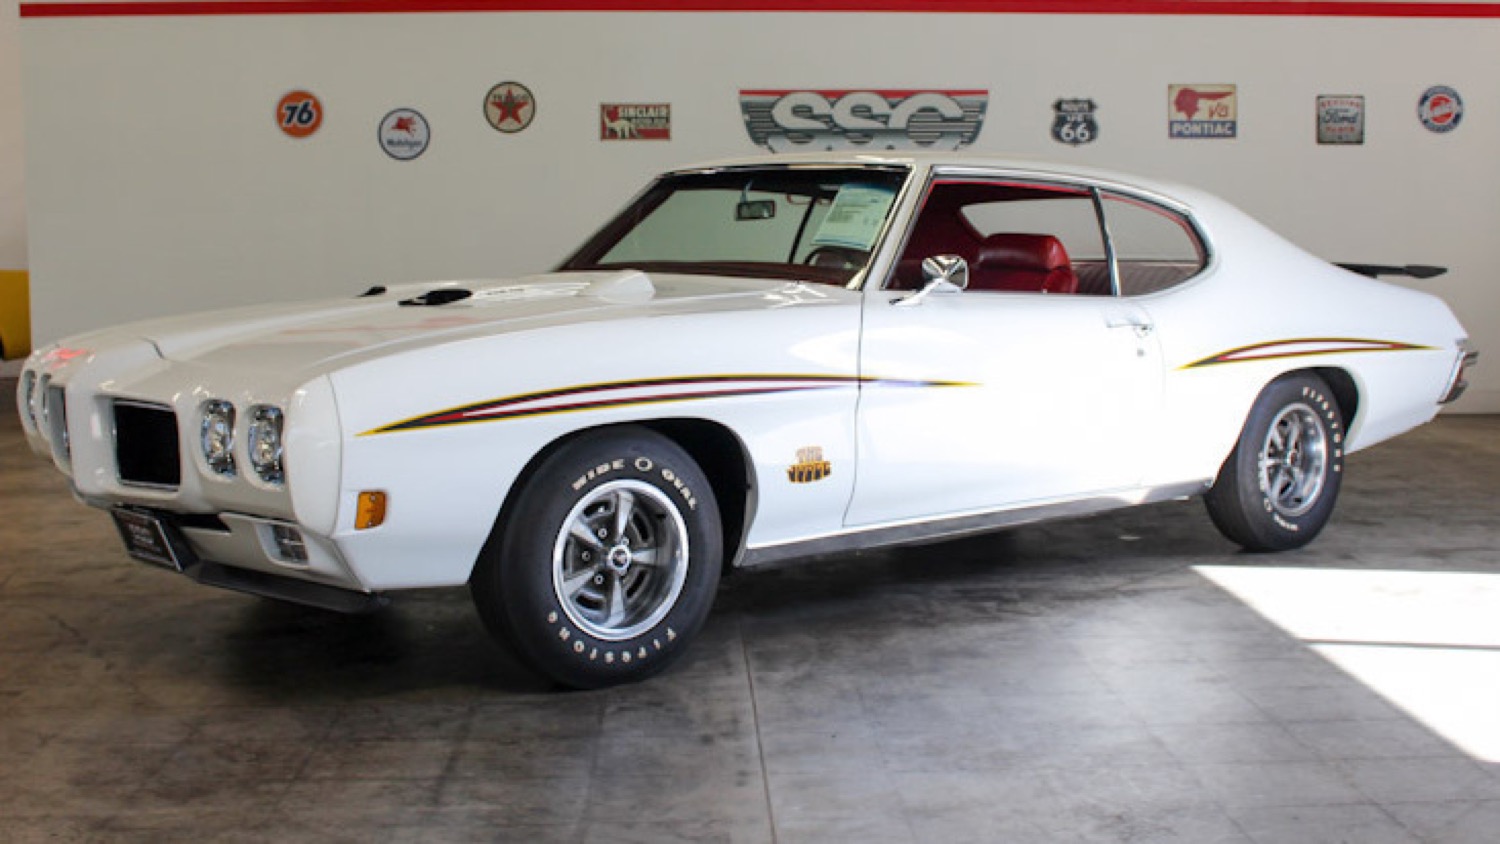 Rare 1970 Pontiac Gto Judge Now Up For Sale Gm Authority